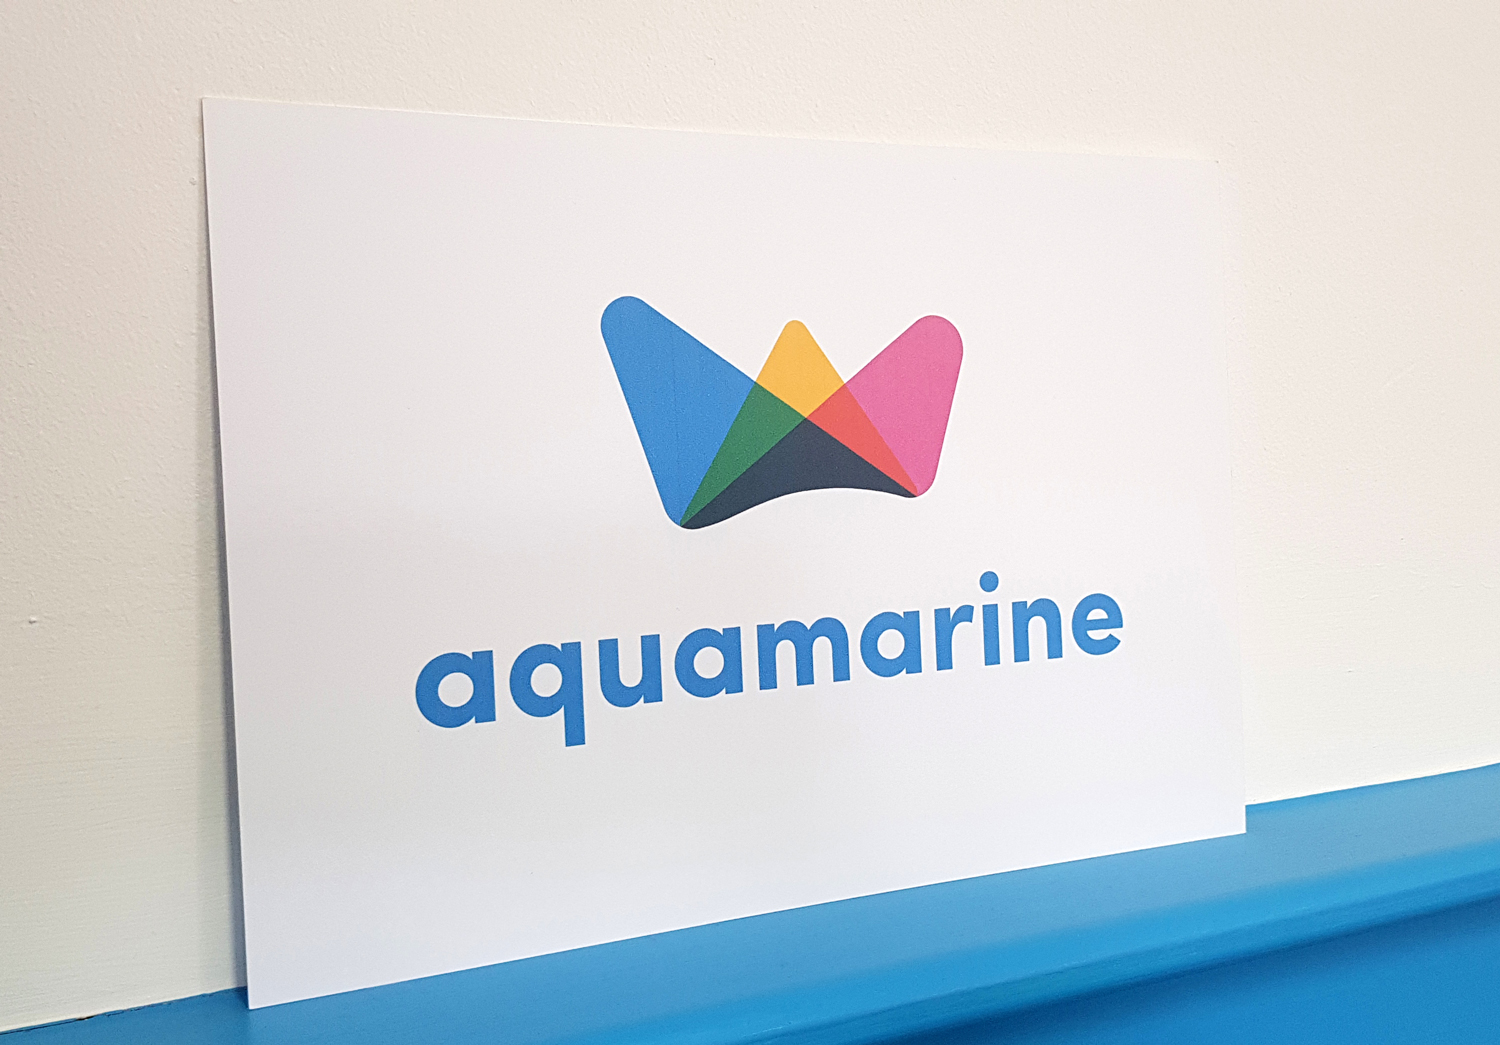 Aquamarine logo on paper